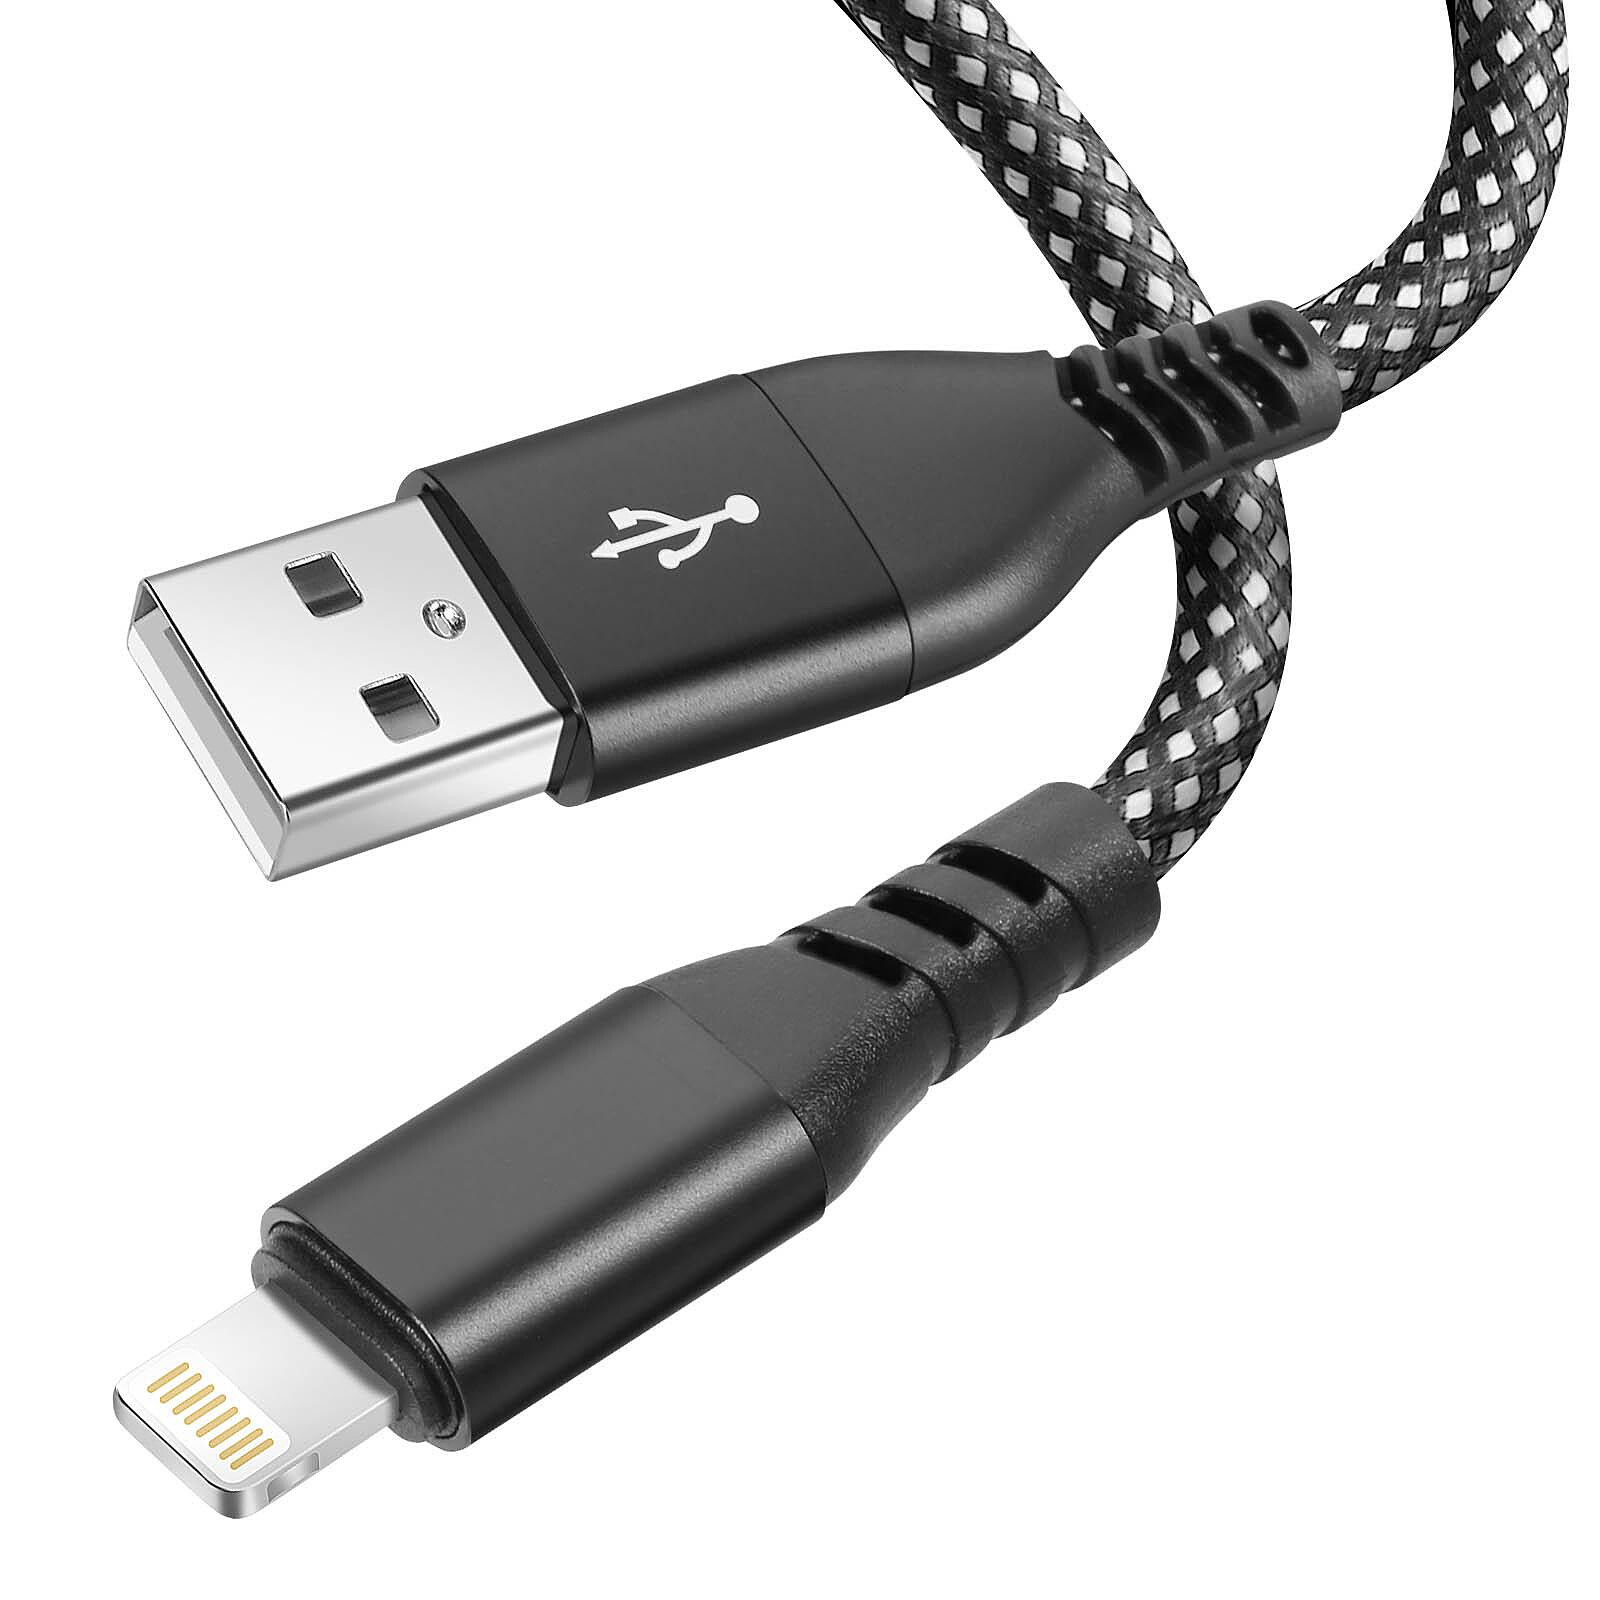 Moxie Câble pour iPhone en nylon tressé noir 2m, USB vers